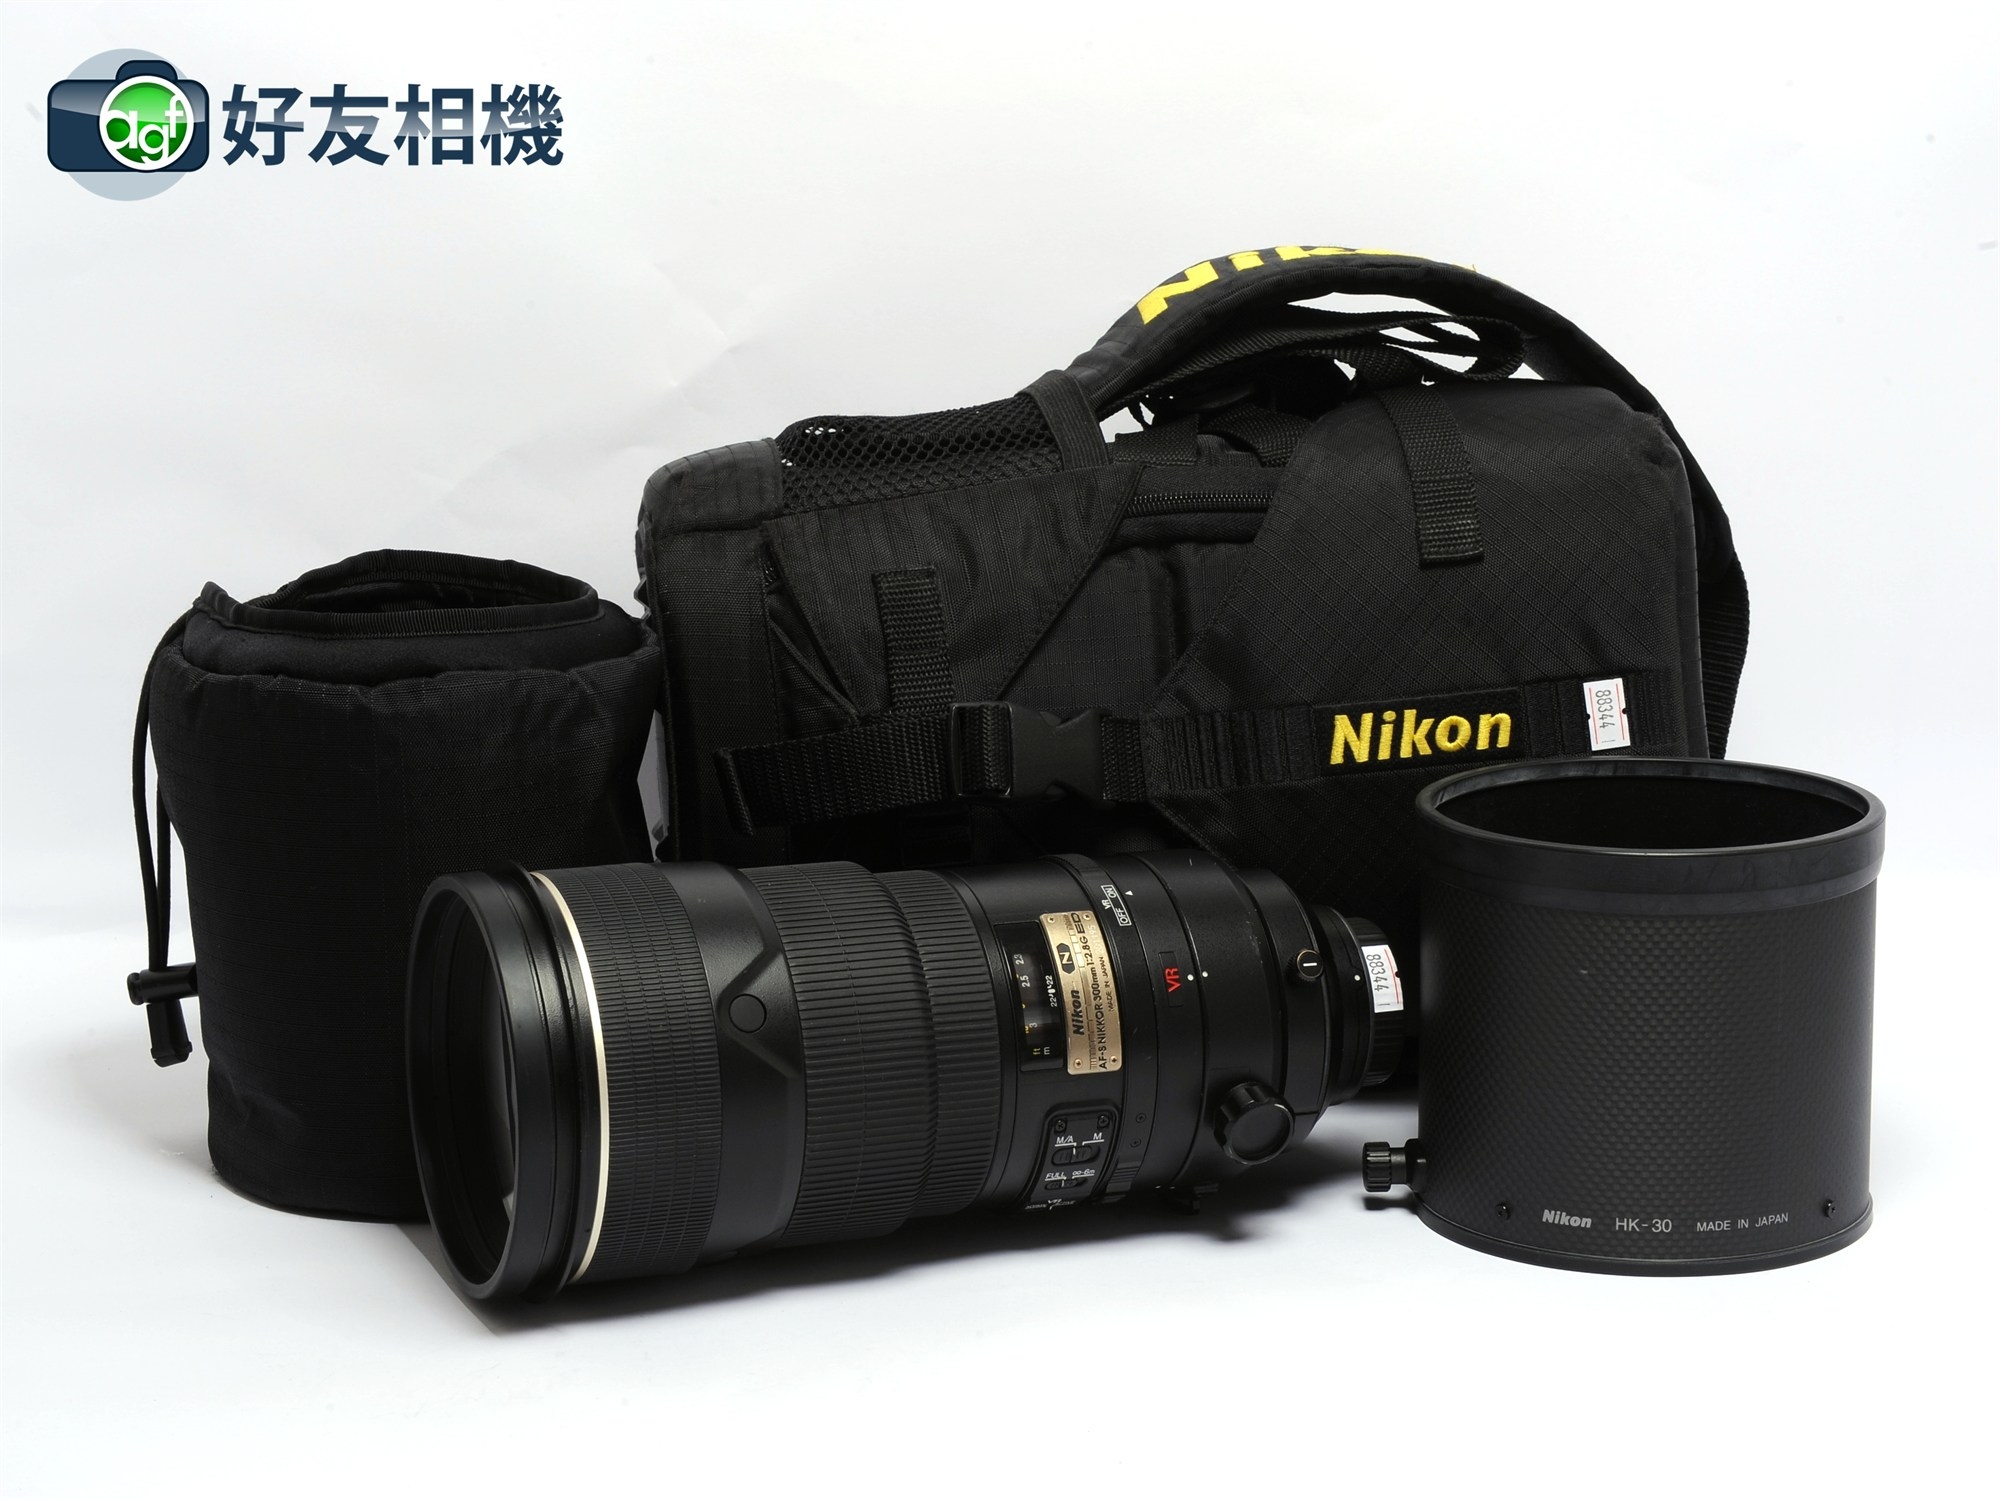 尼康/Nikon 300/2.8 G ED VR 一代防抖 300mm F2.8 长焦镜头